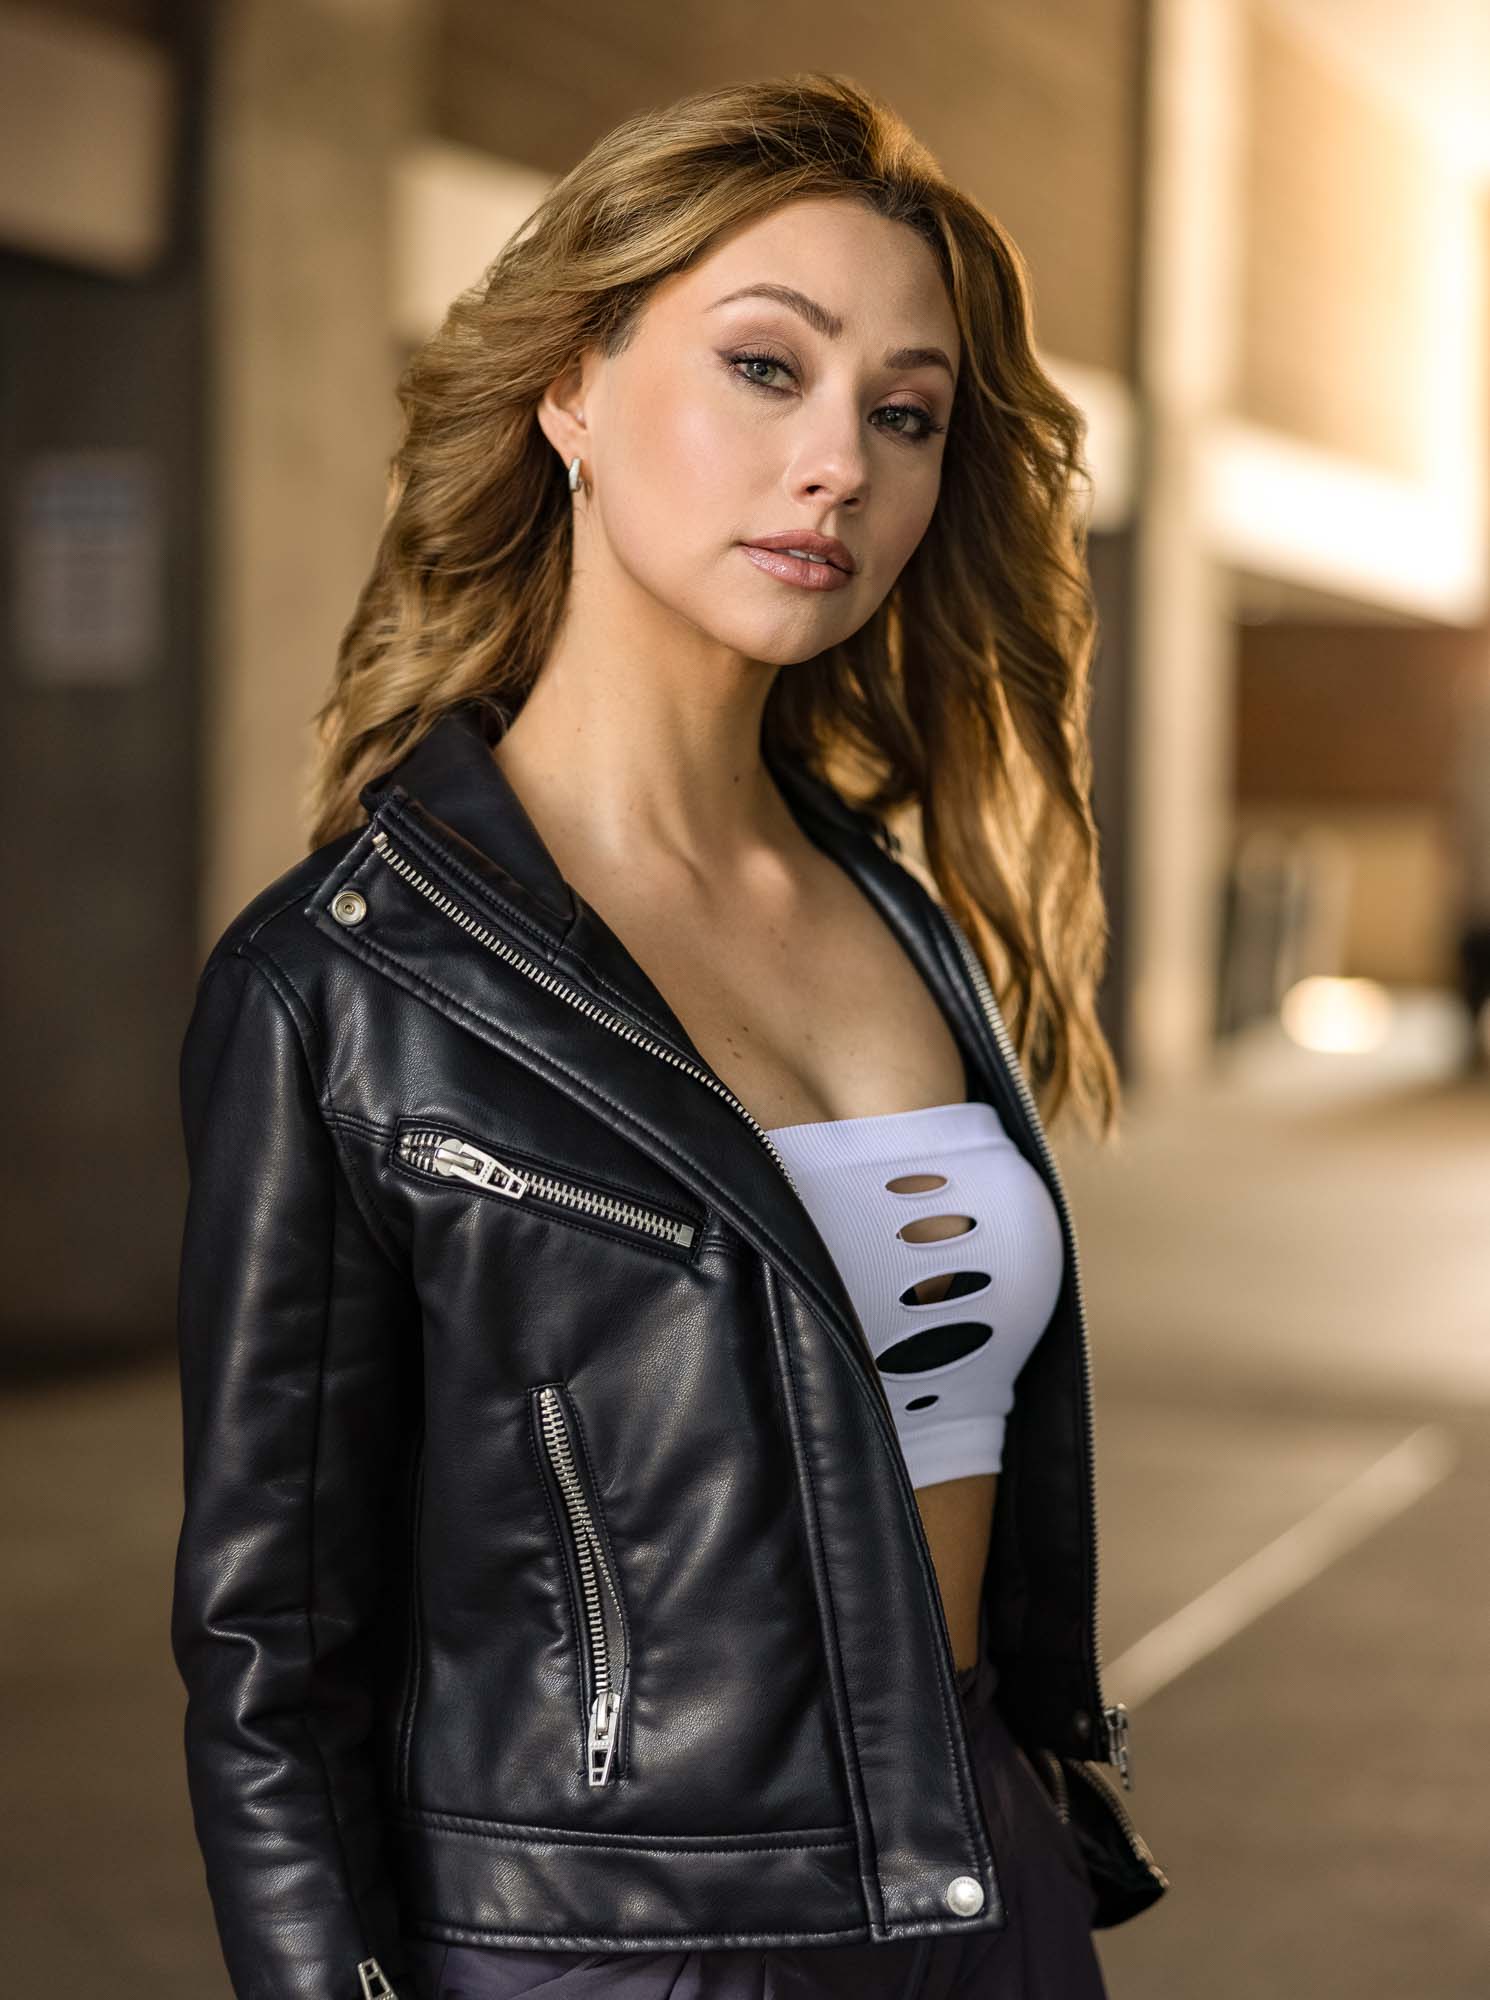 Denver fashion model in leather jacket